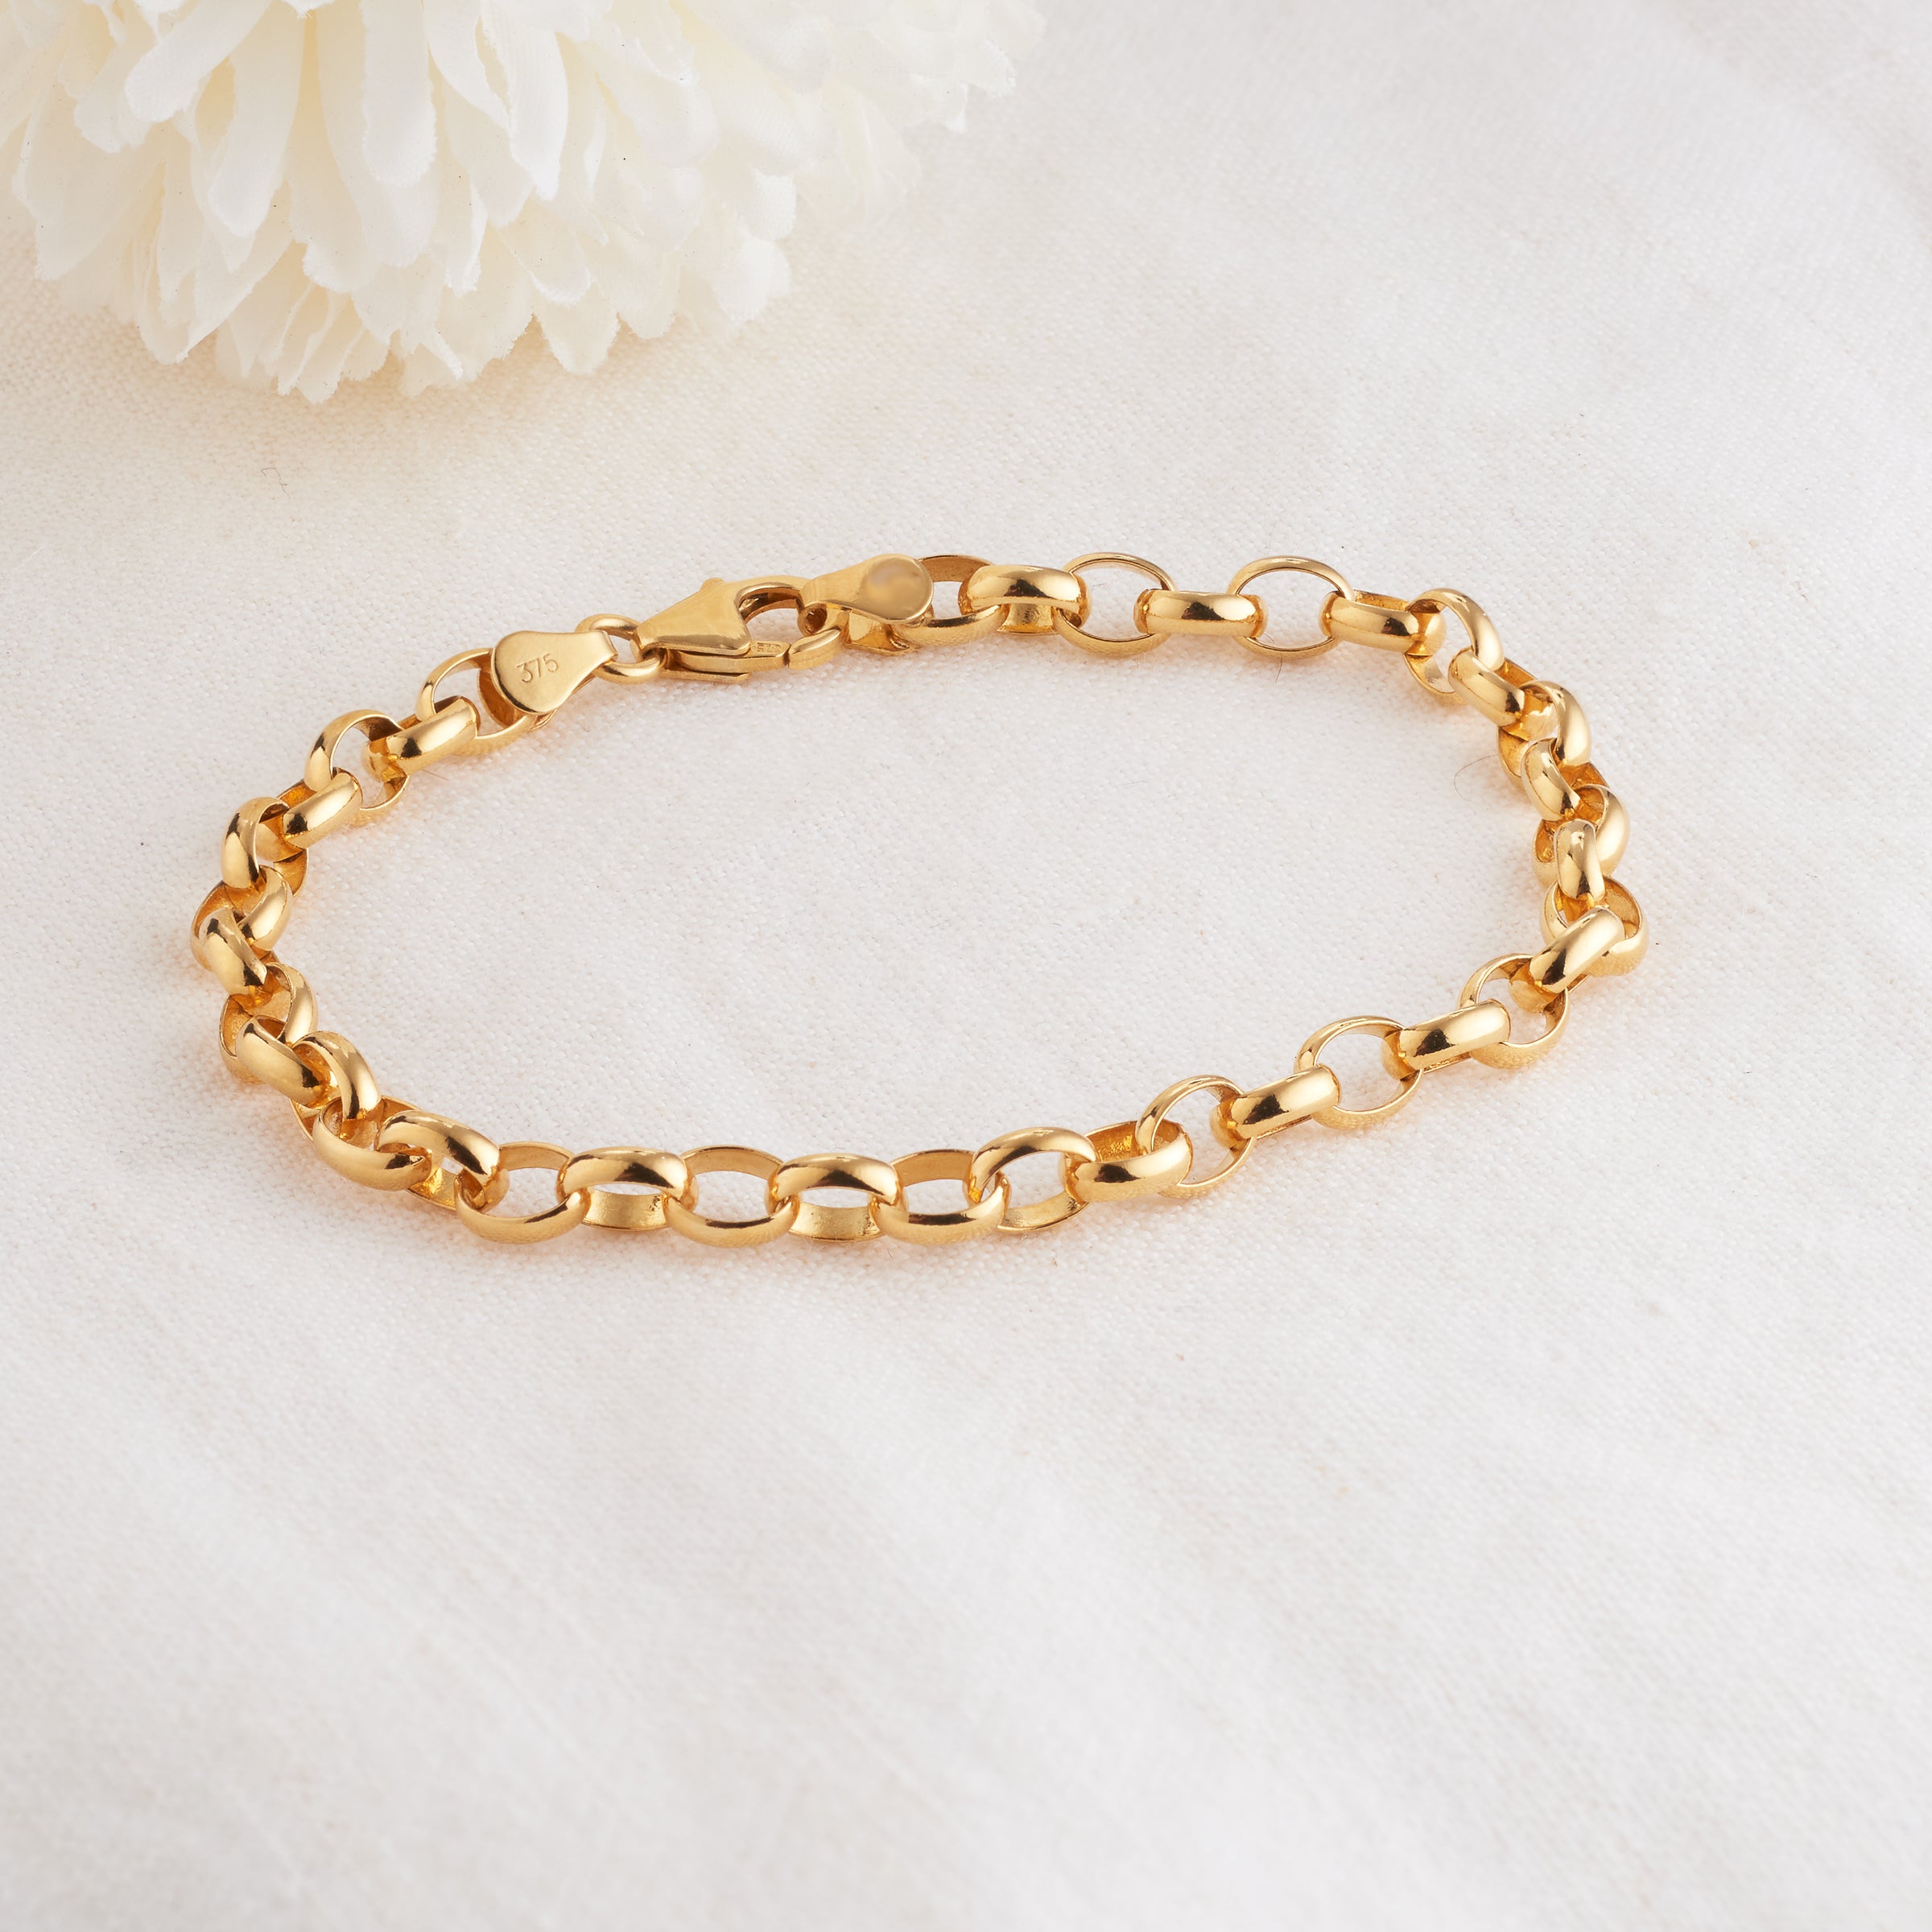 Buy THE BLING KING XXL Ornate Belcher Chain Bracelet - Heavy Real Gold  Plated Jewellery - Gold Belcher Bracelet for Men & Women - Premium Chunky  Bracelet - Length: 9 Inches, Width: 15mm Online at desertcartINDIA